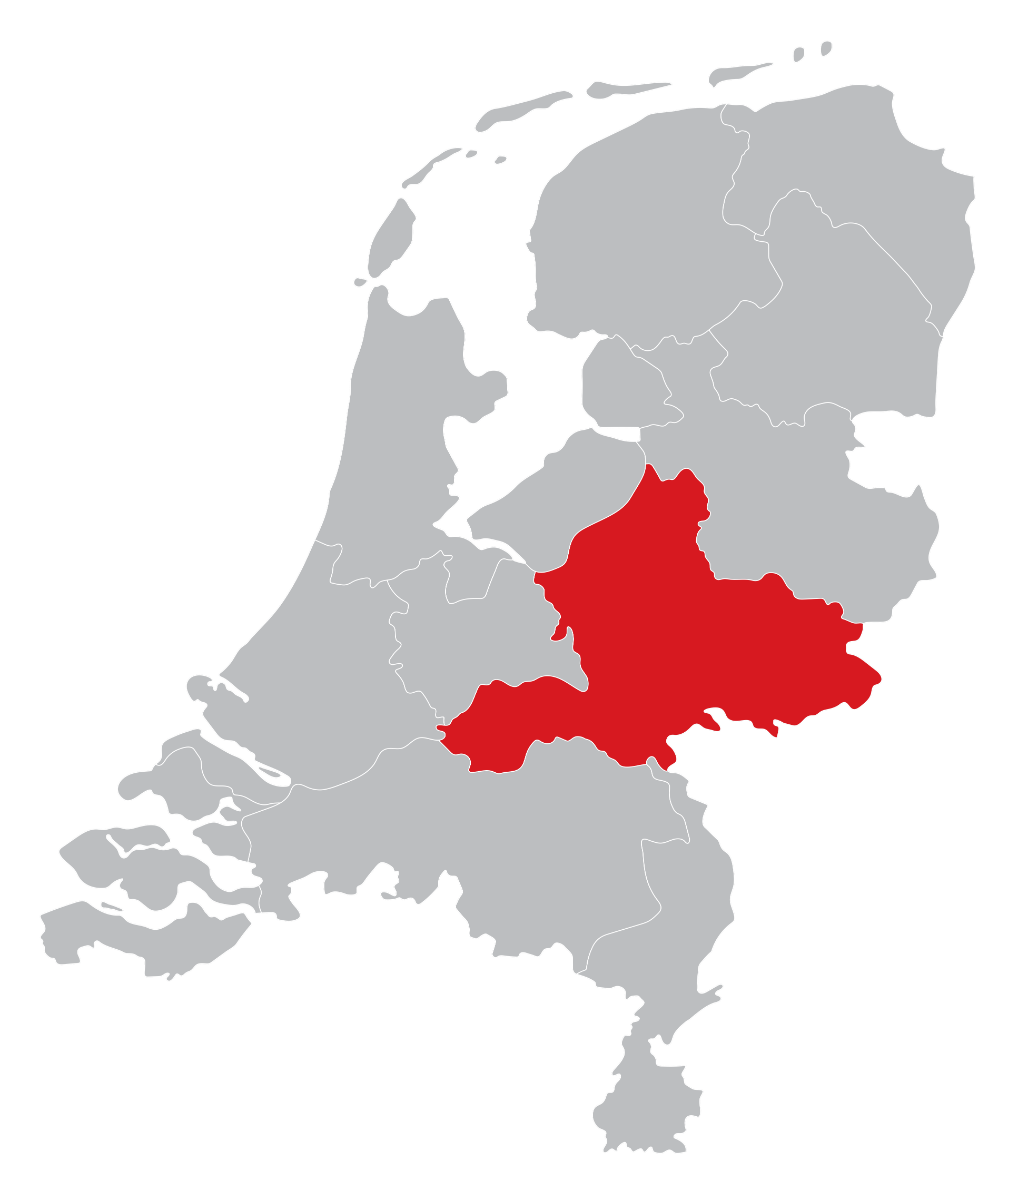 Dealers kaart in Gelderland, Nijmegen, Arnhem, Ede, Harderwijk of Apeldoorn